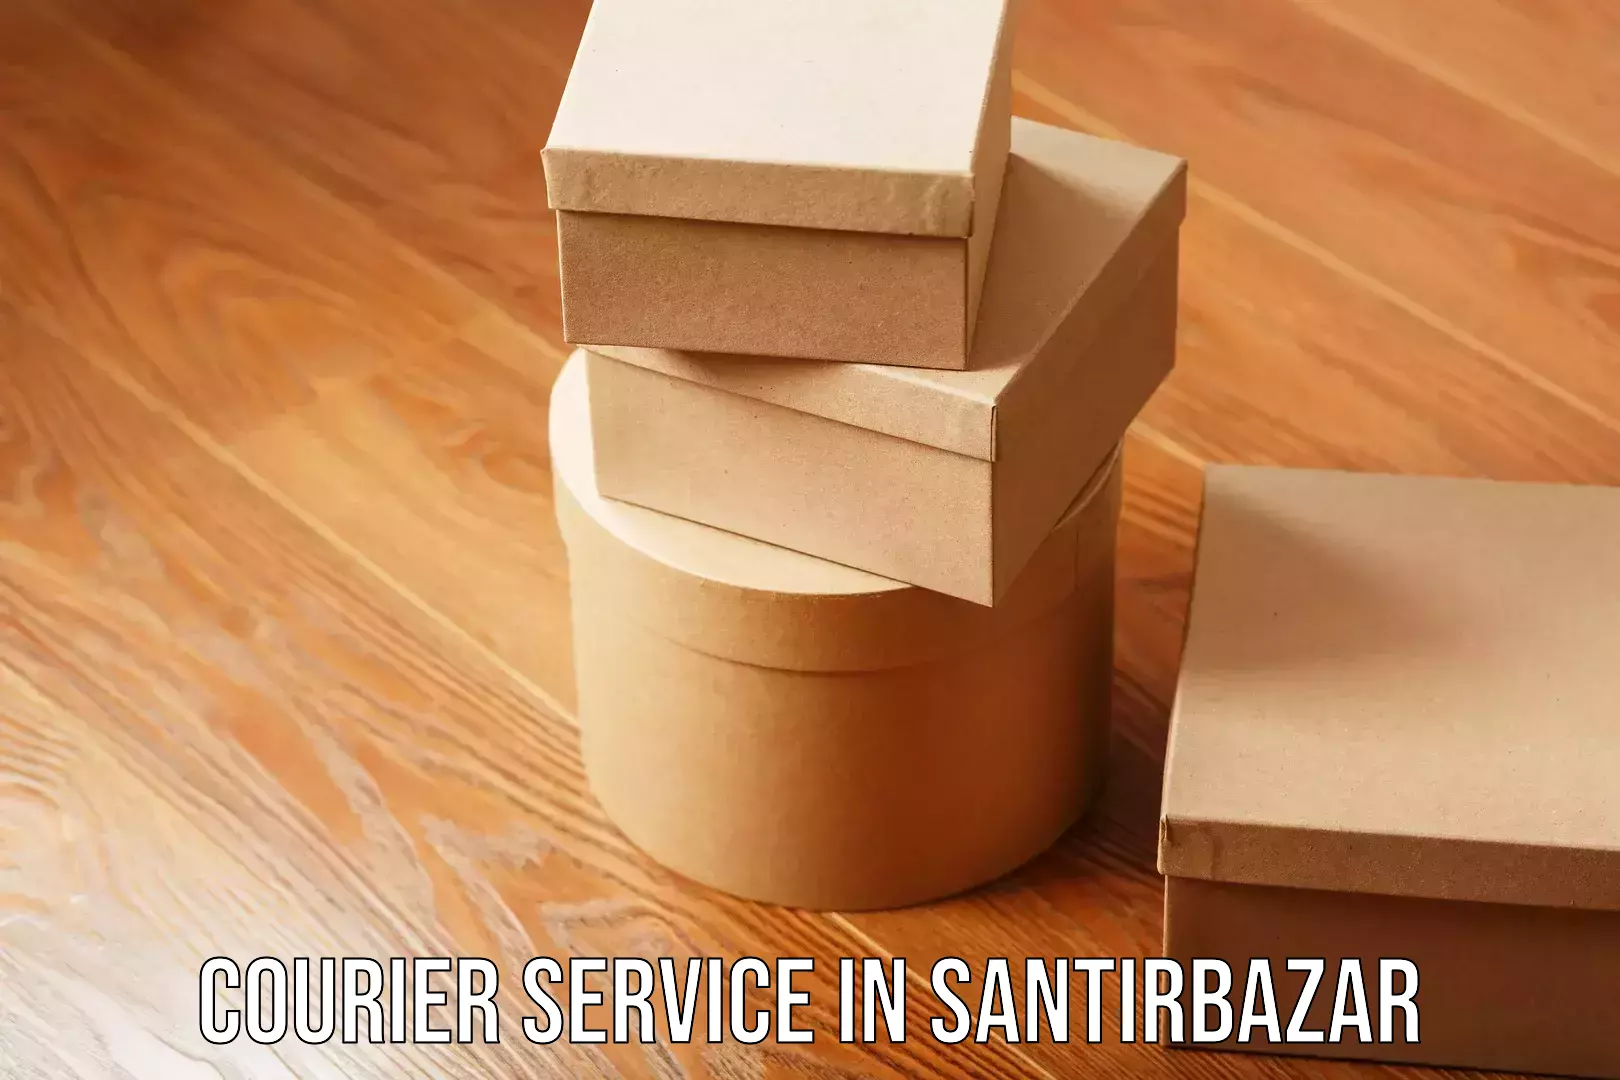 International courier networks in Santirbazar